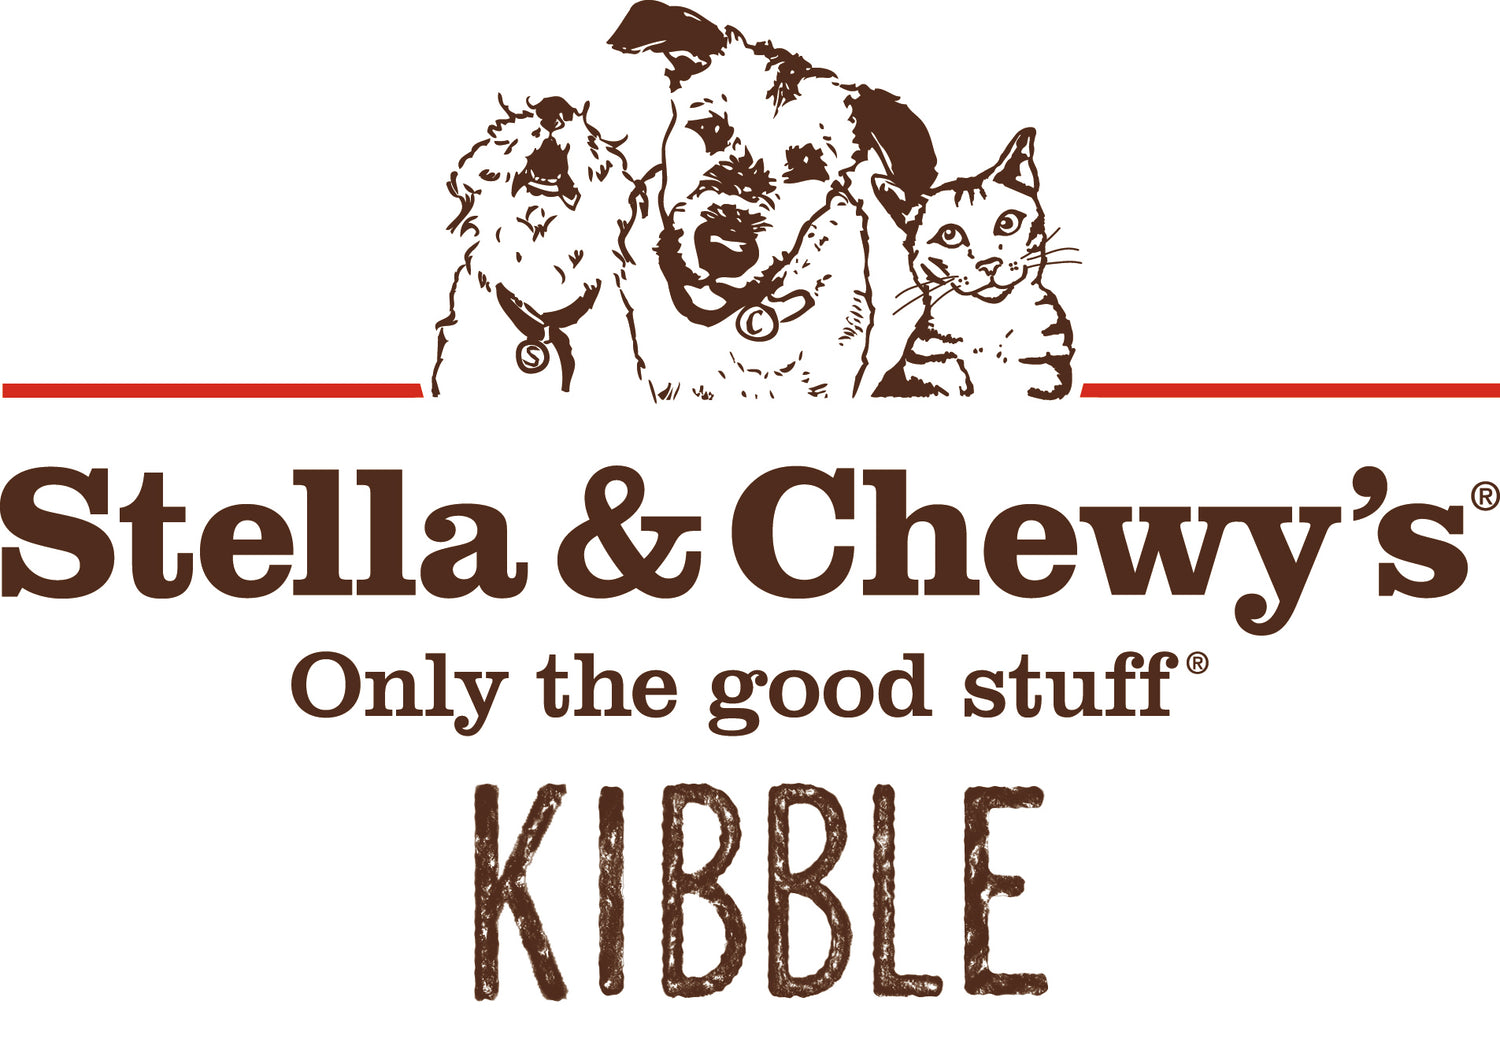 Stella & Chewy's Kibble